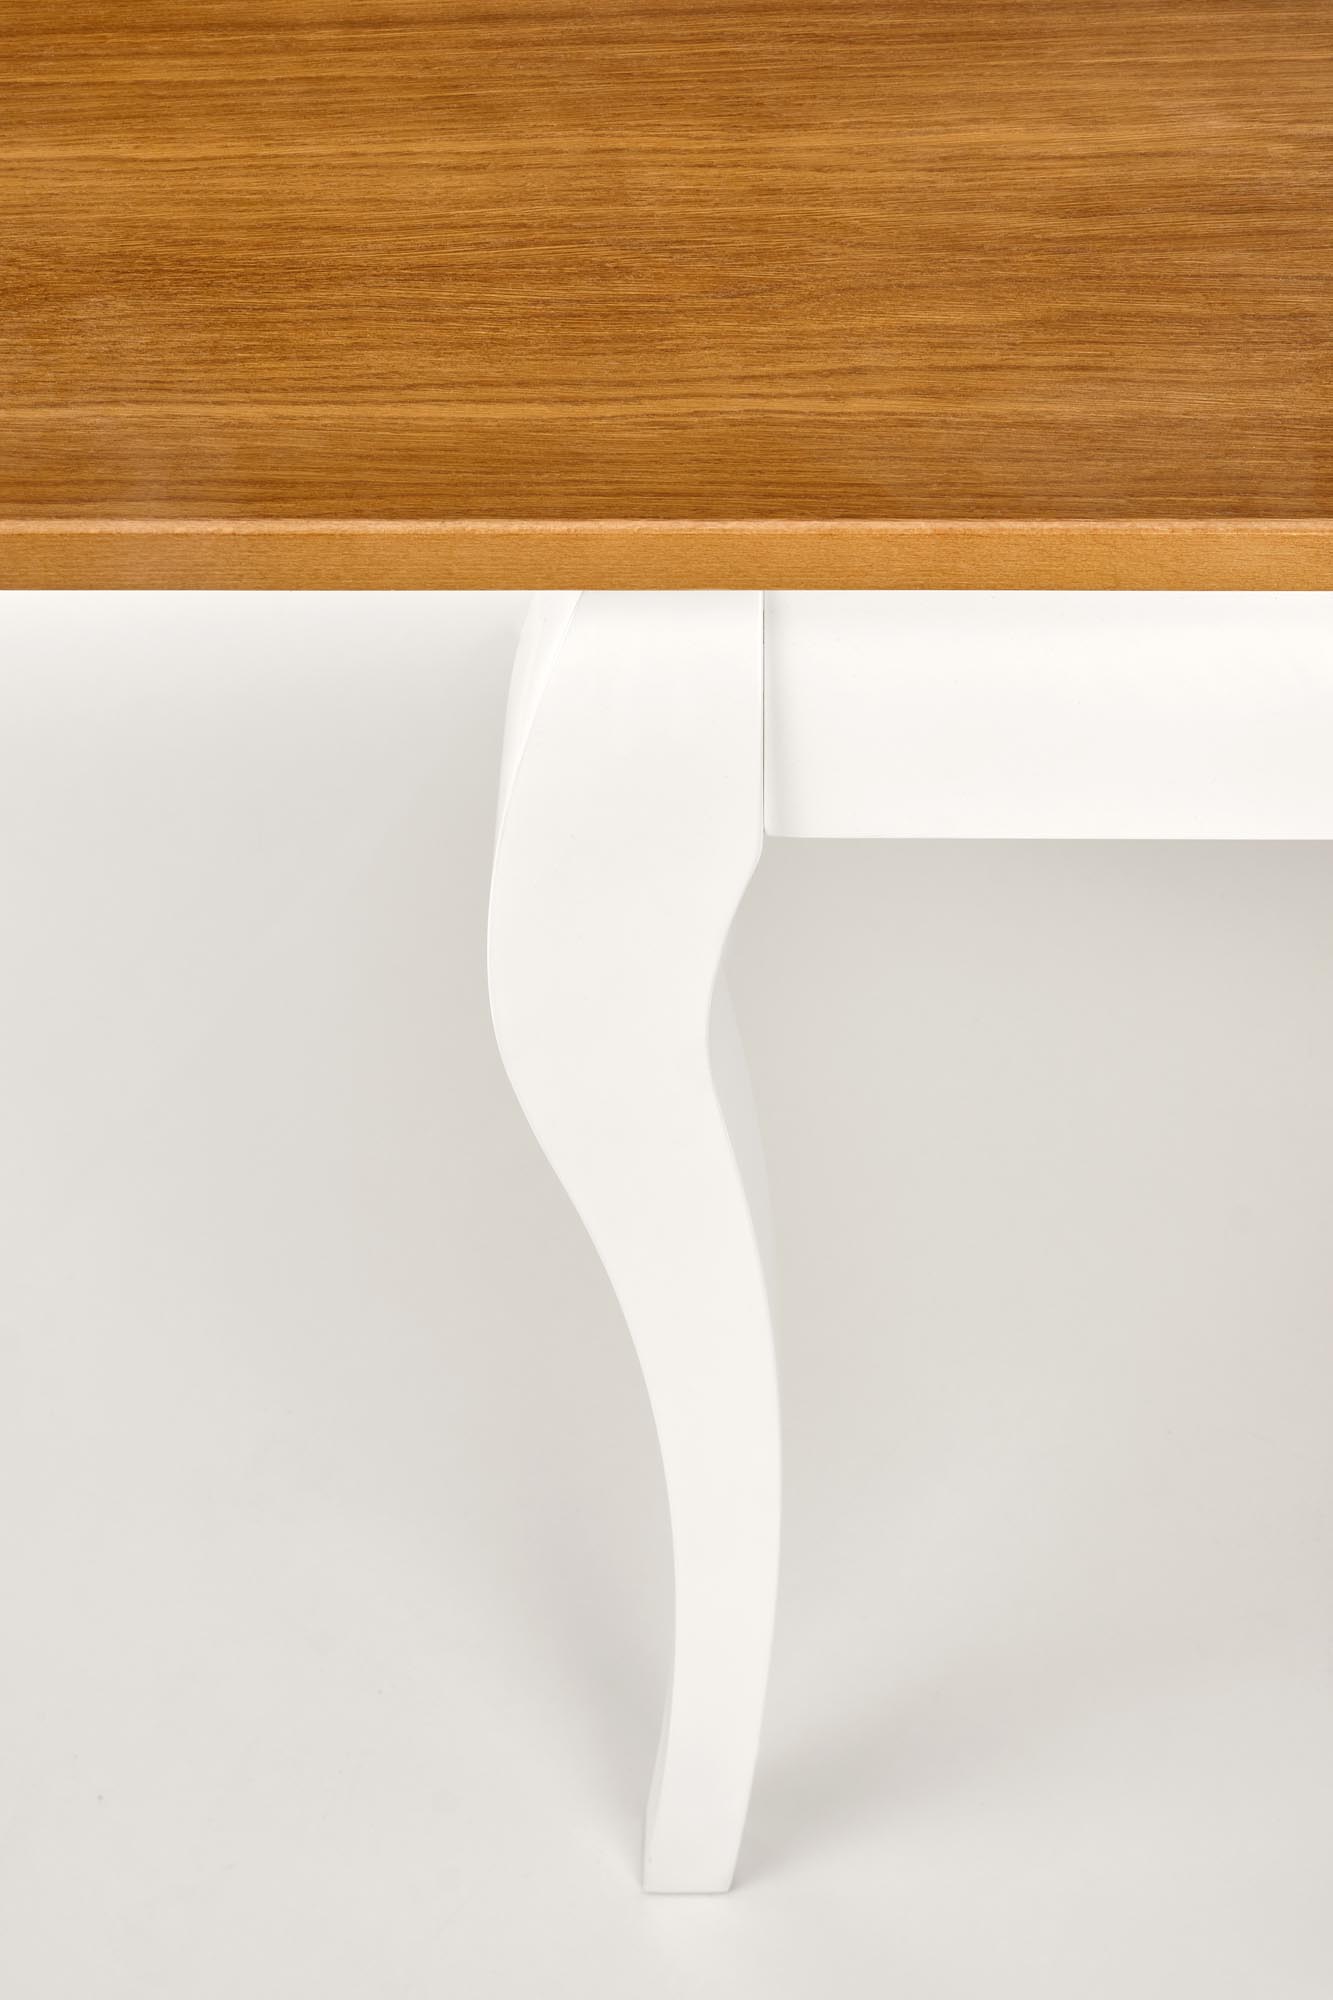 WINDSOR stół rozkładany 160-240x90x76 cm kolor ciemny dąb/biały windsor stół rozkładany 160-240x90x76 cm kolor ciemny dąb/biały